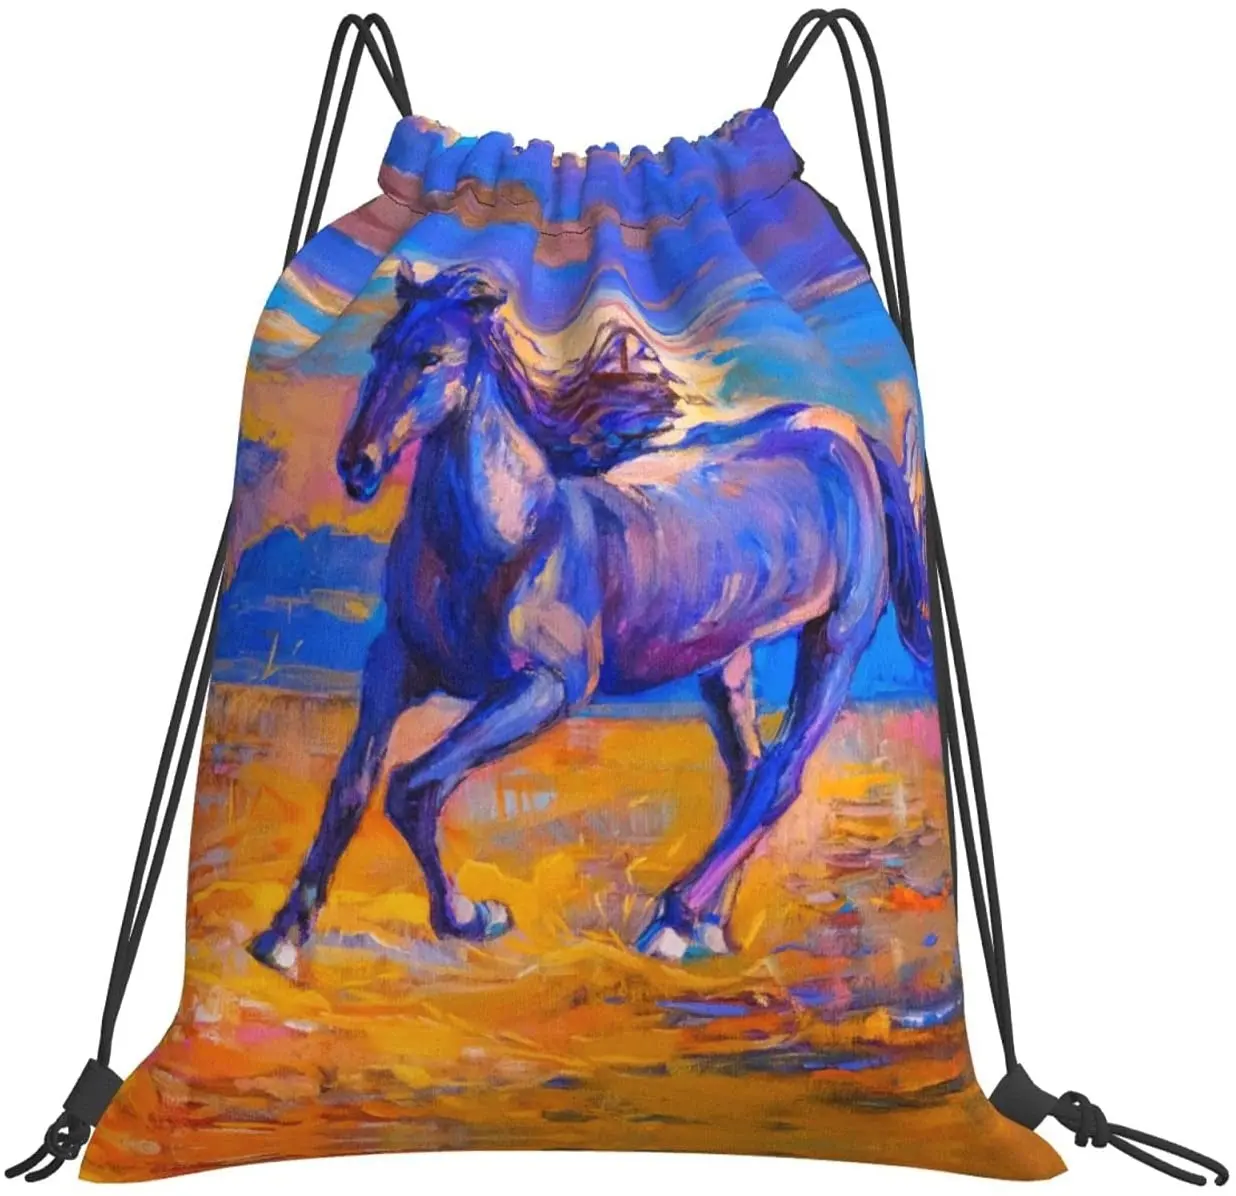 Mochila de cordão infantil com estampa de cavalos, elegante, mochila de grande capacidade, esportiva, yoga, academia, bolsa para meninos e meninas